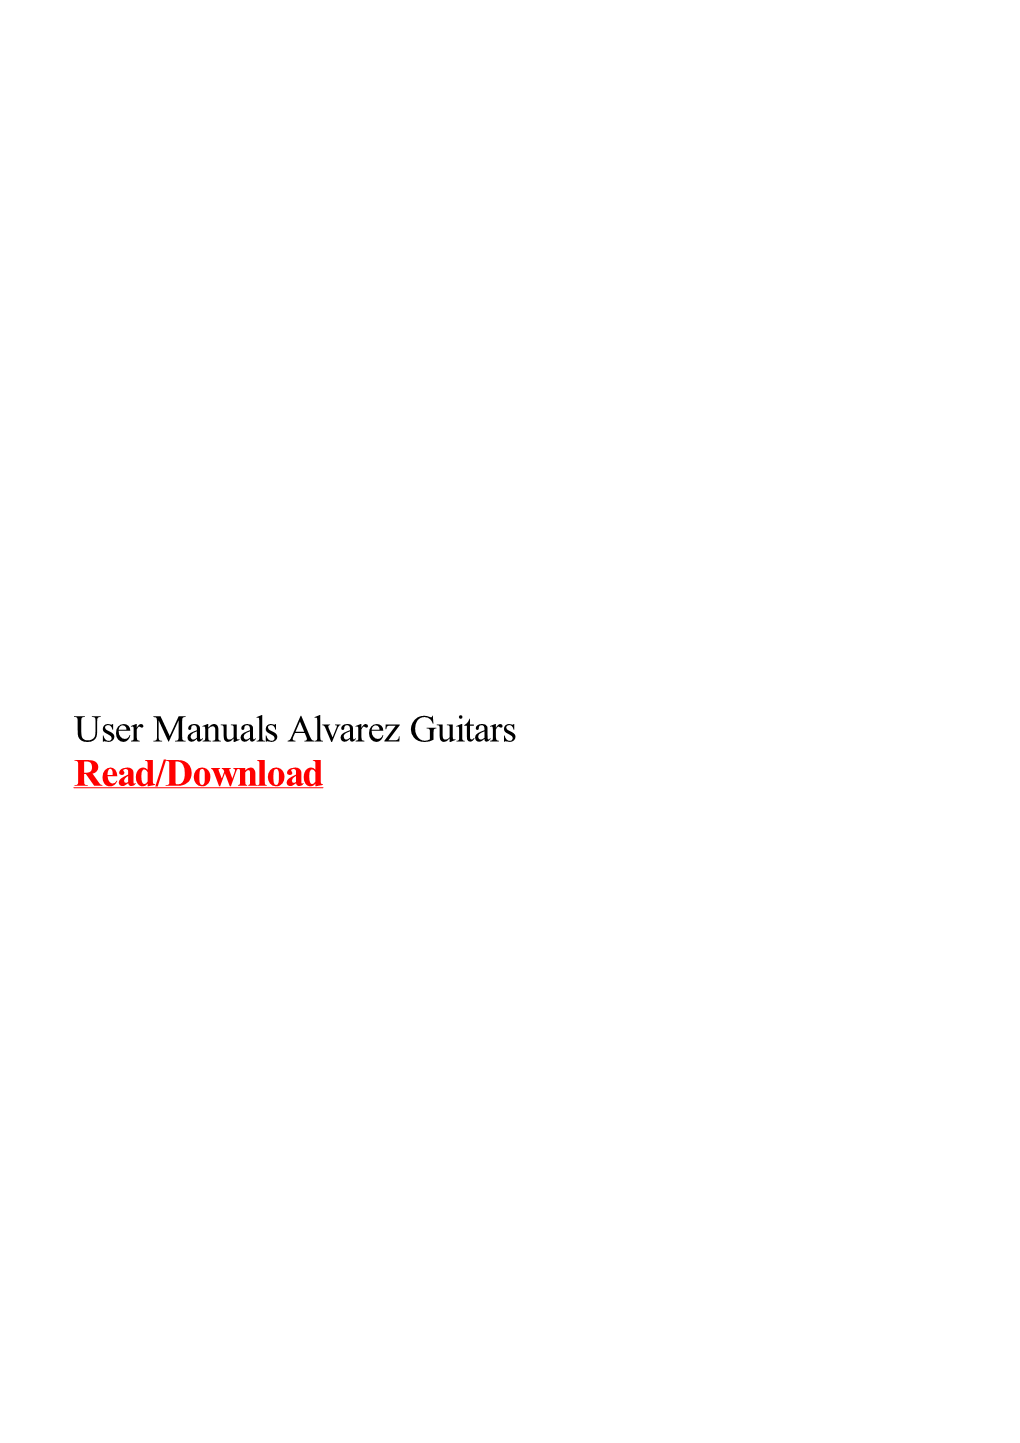 User Manuals Alvarez Guitars